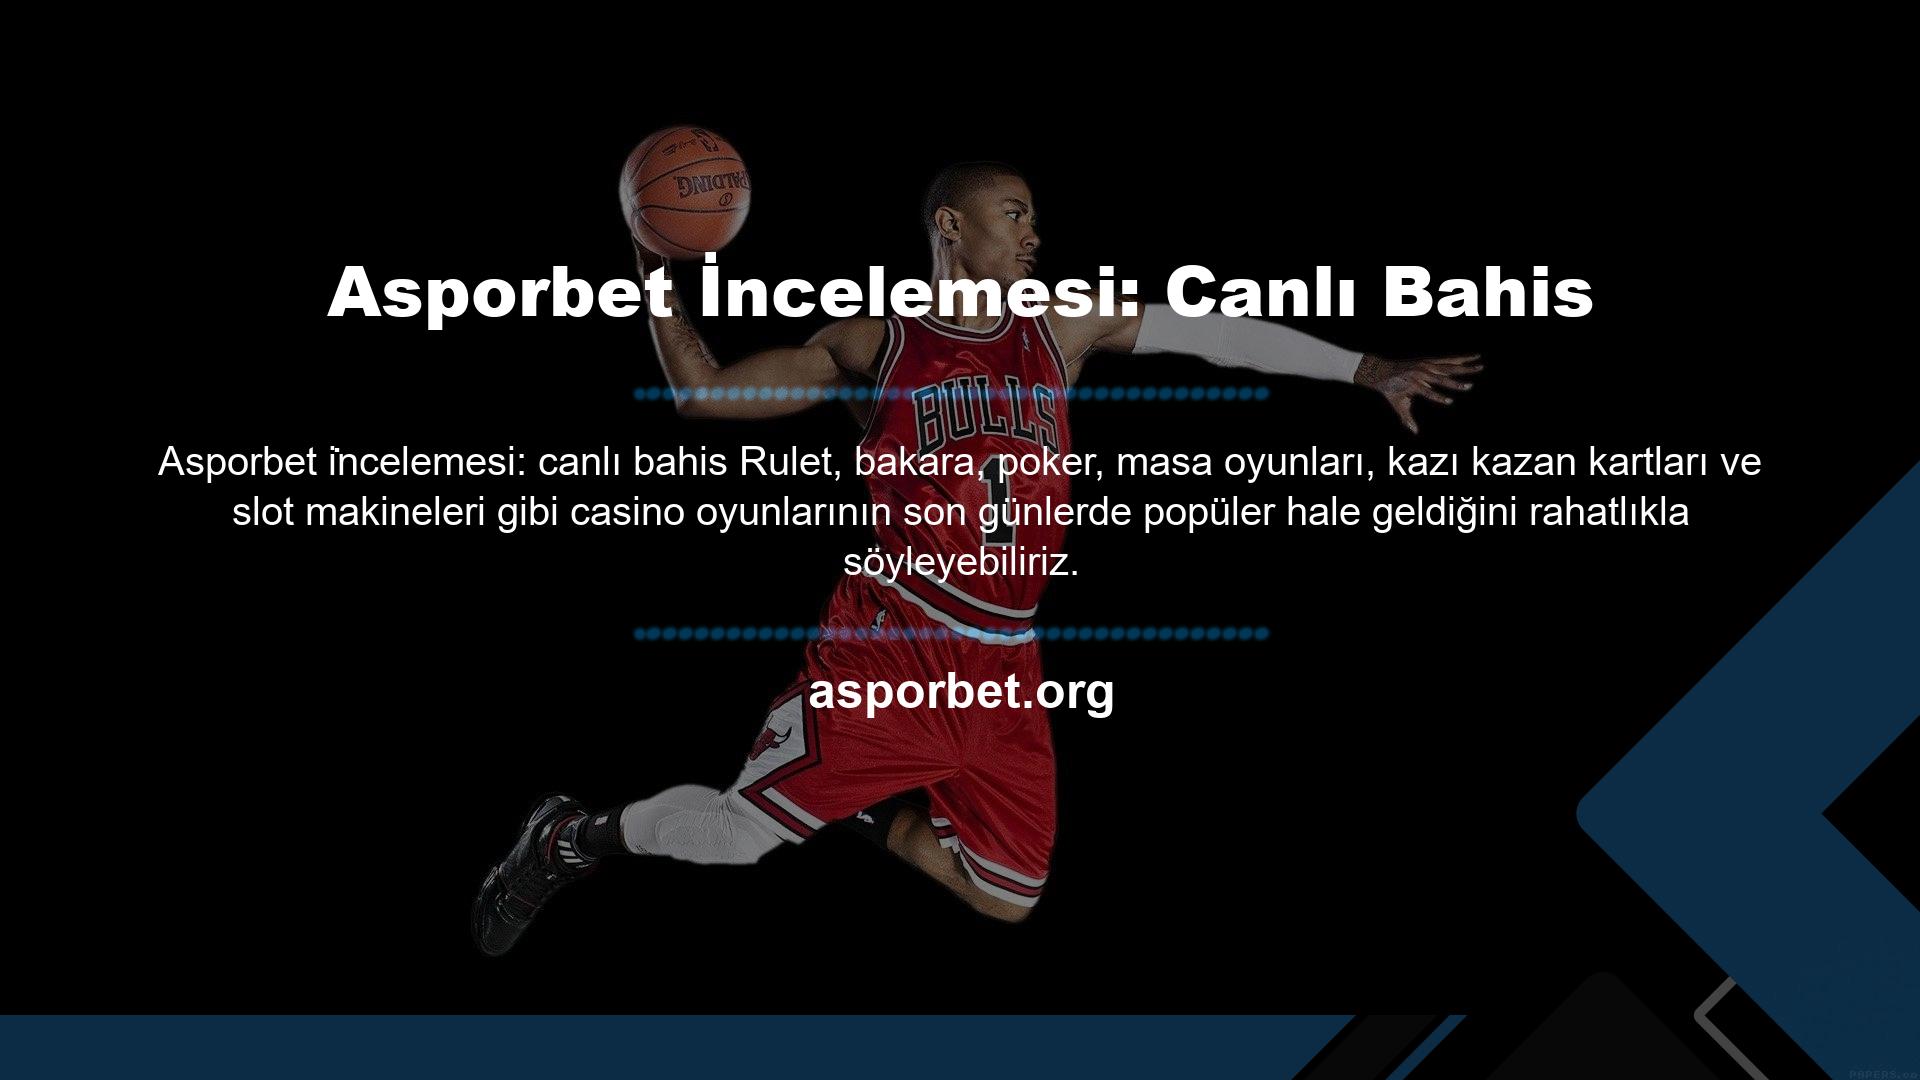 Asporbet Casino web sitesi bunlardan biridir